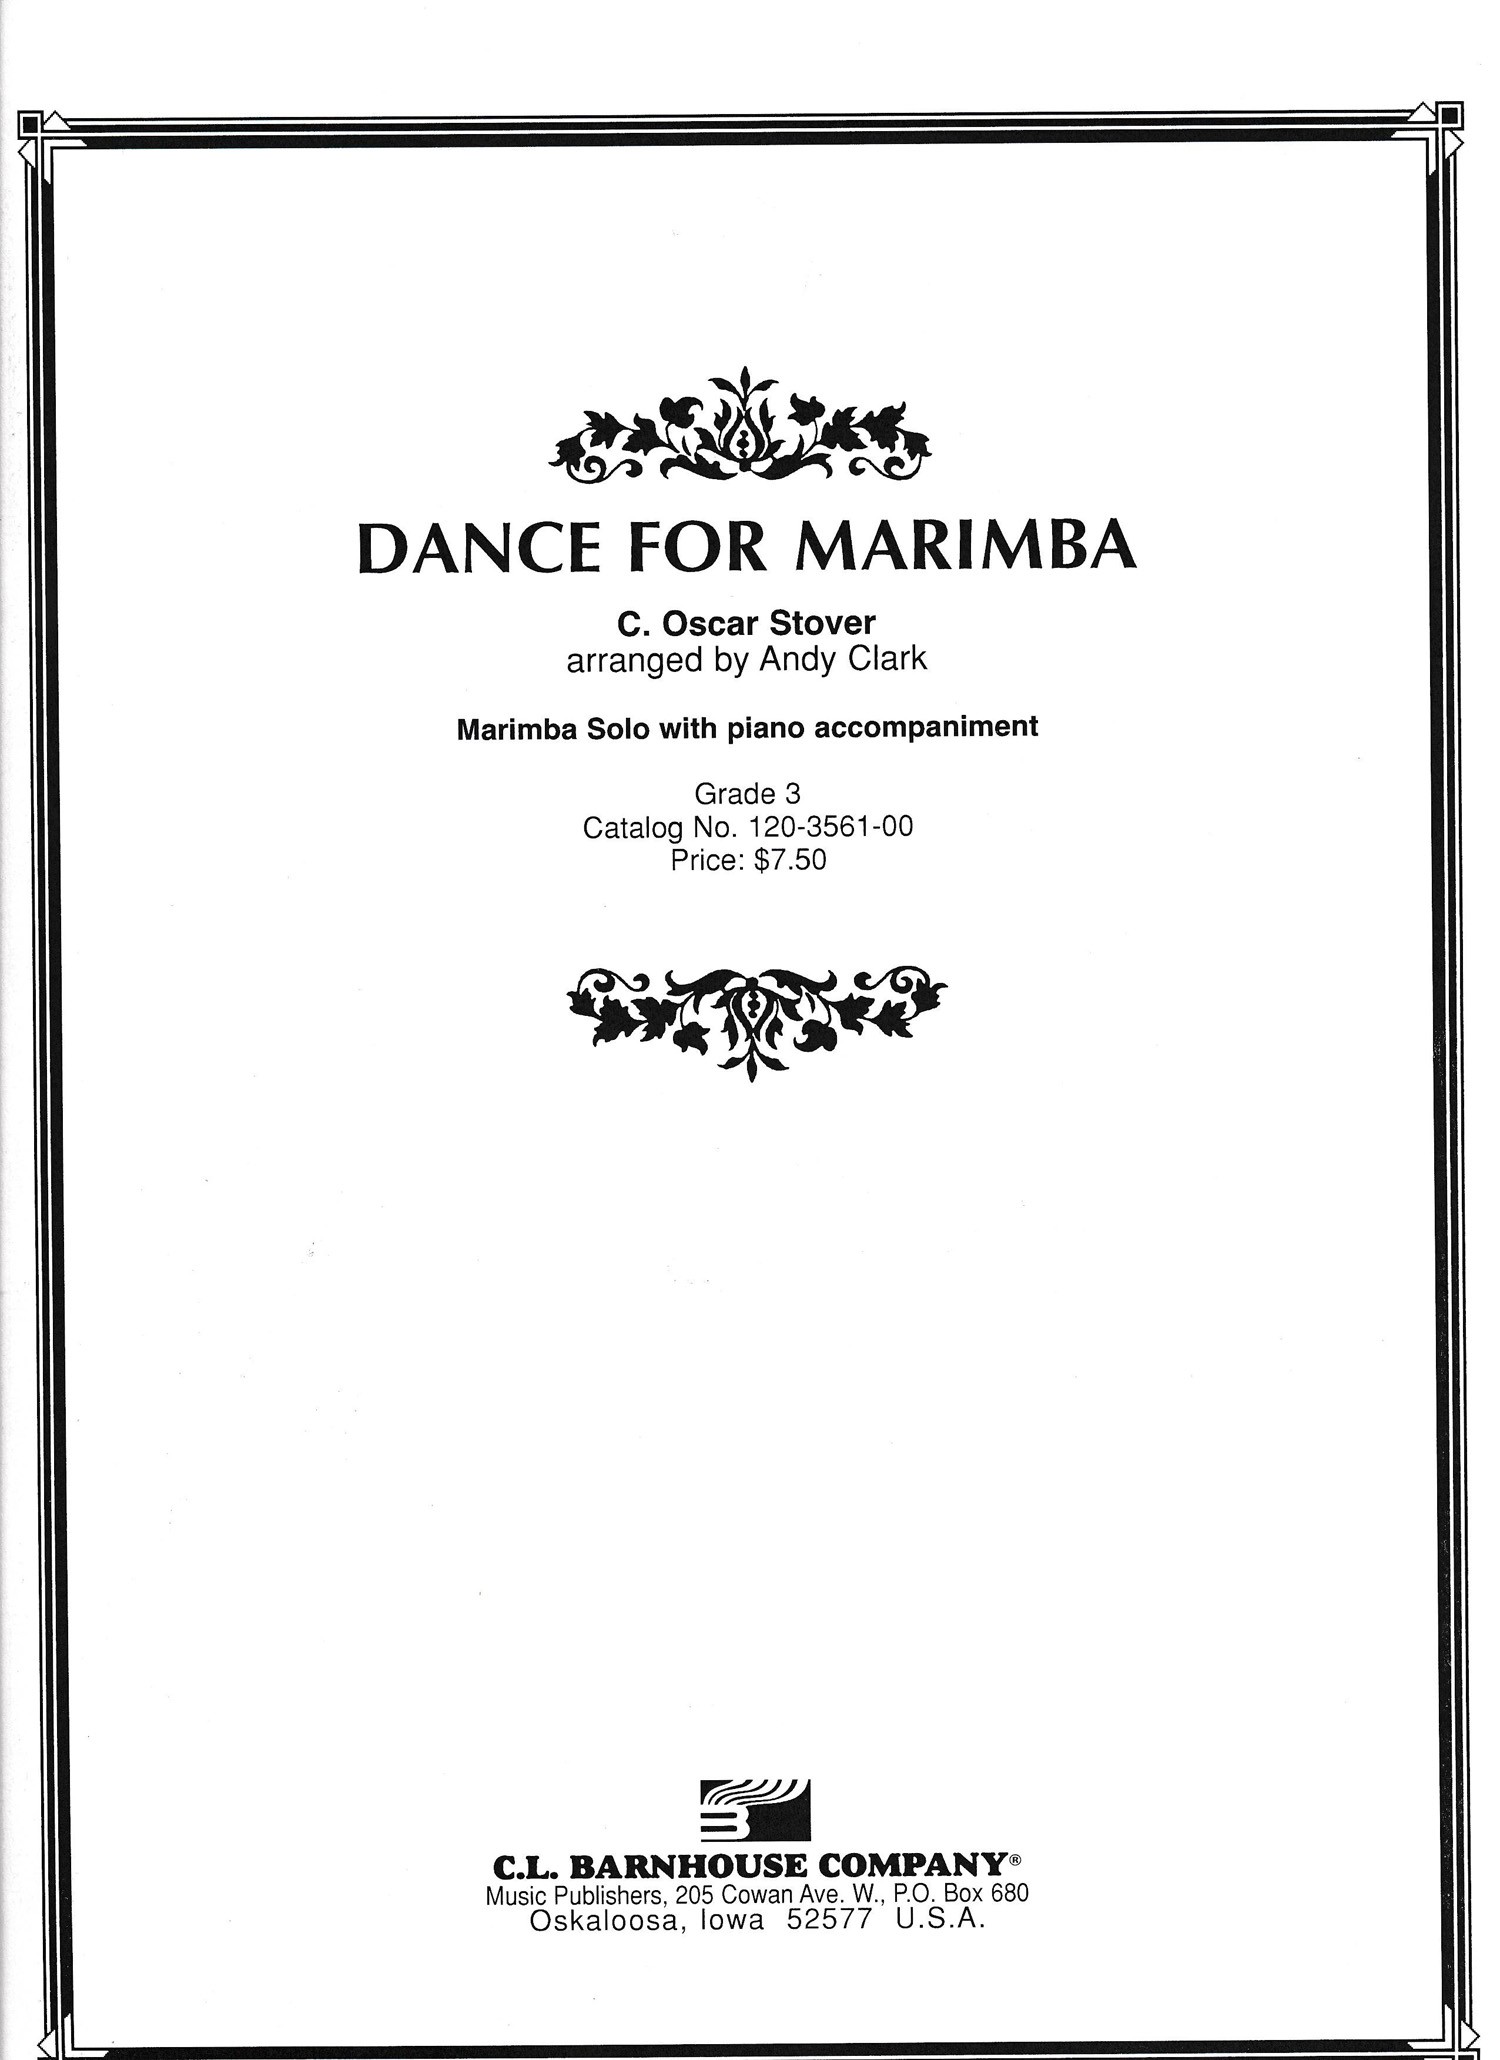 Dance for Marimba